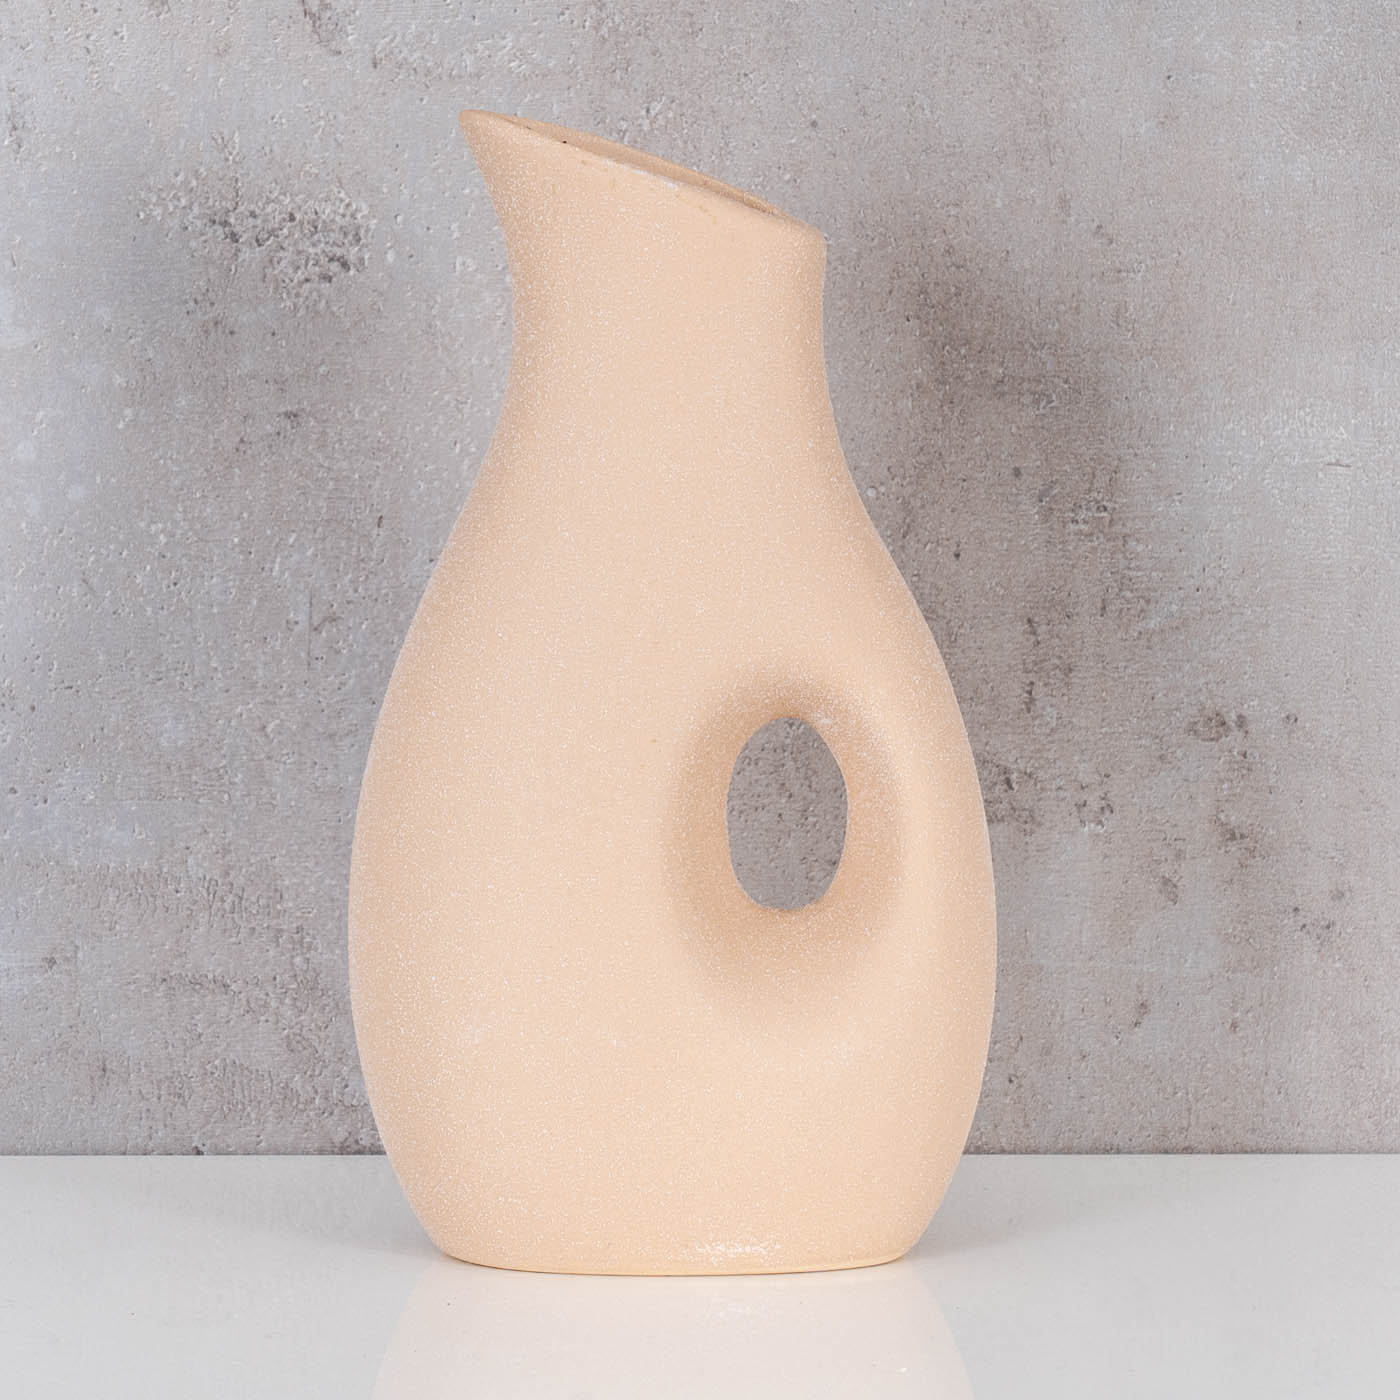 Vase H22cm Blumenvase Keramik Sand Beige Tischdeko Dekovase Keramikvase Deko